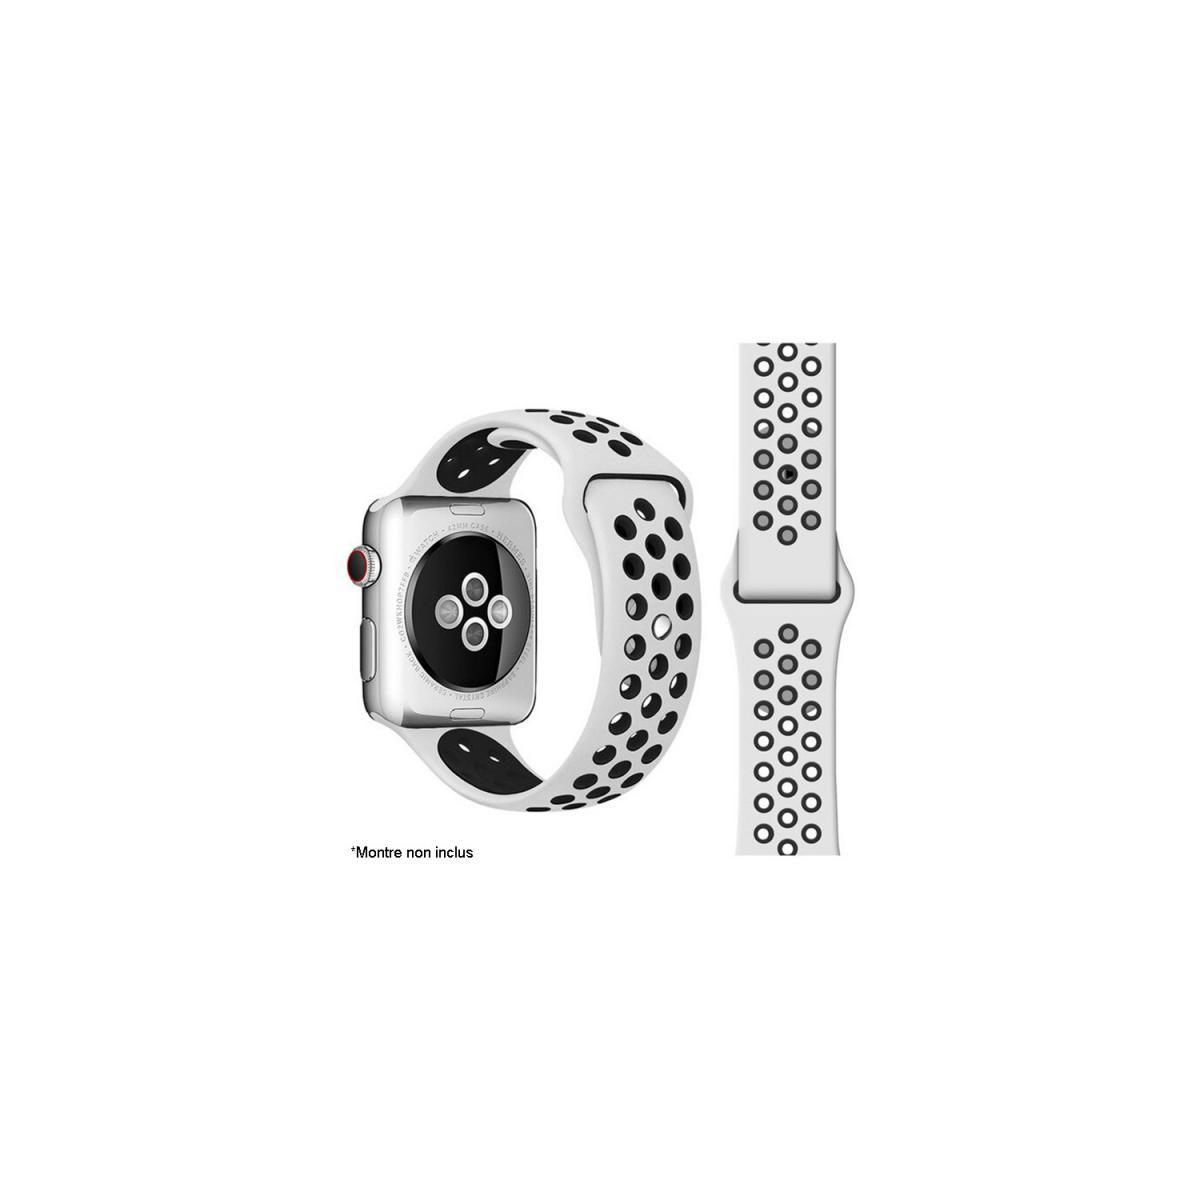 Ibroz - Ibroz Bracelet Apple Watch Sport 44mm blanc et noir - Accessoires Apple Watch